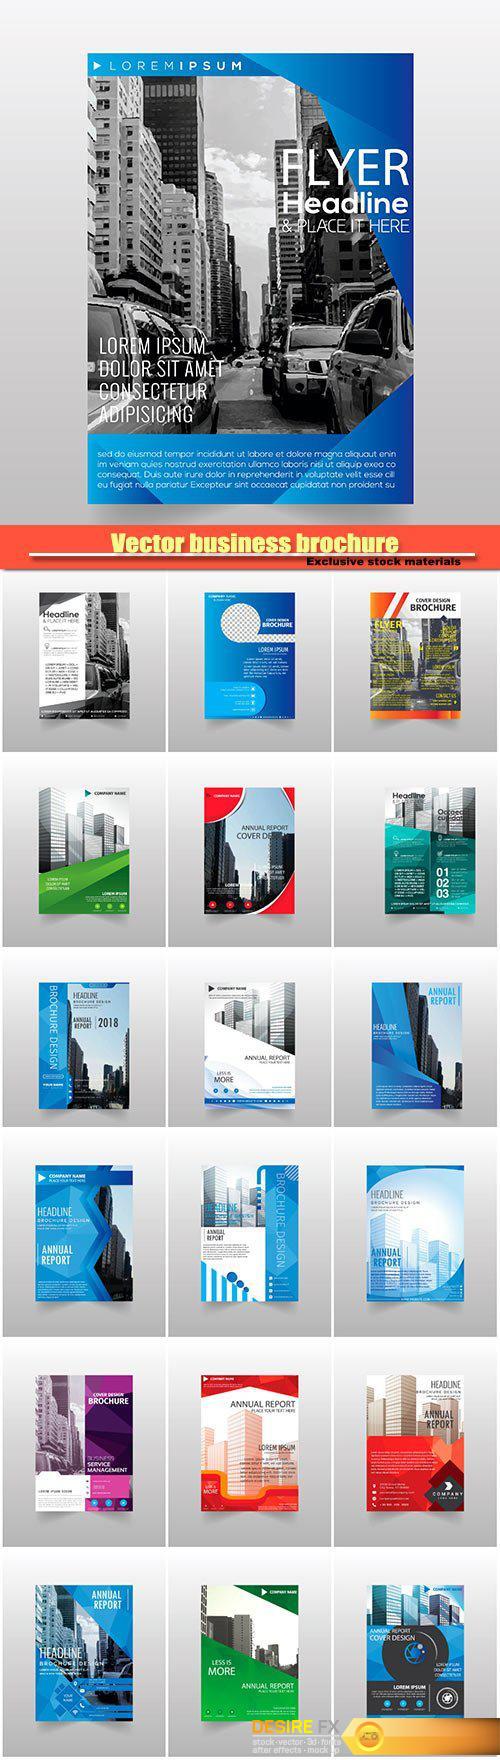 Vector business brochure flyers